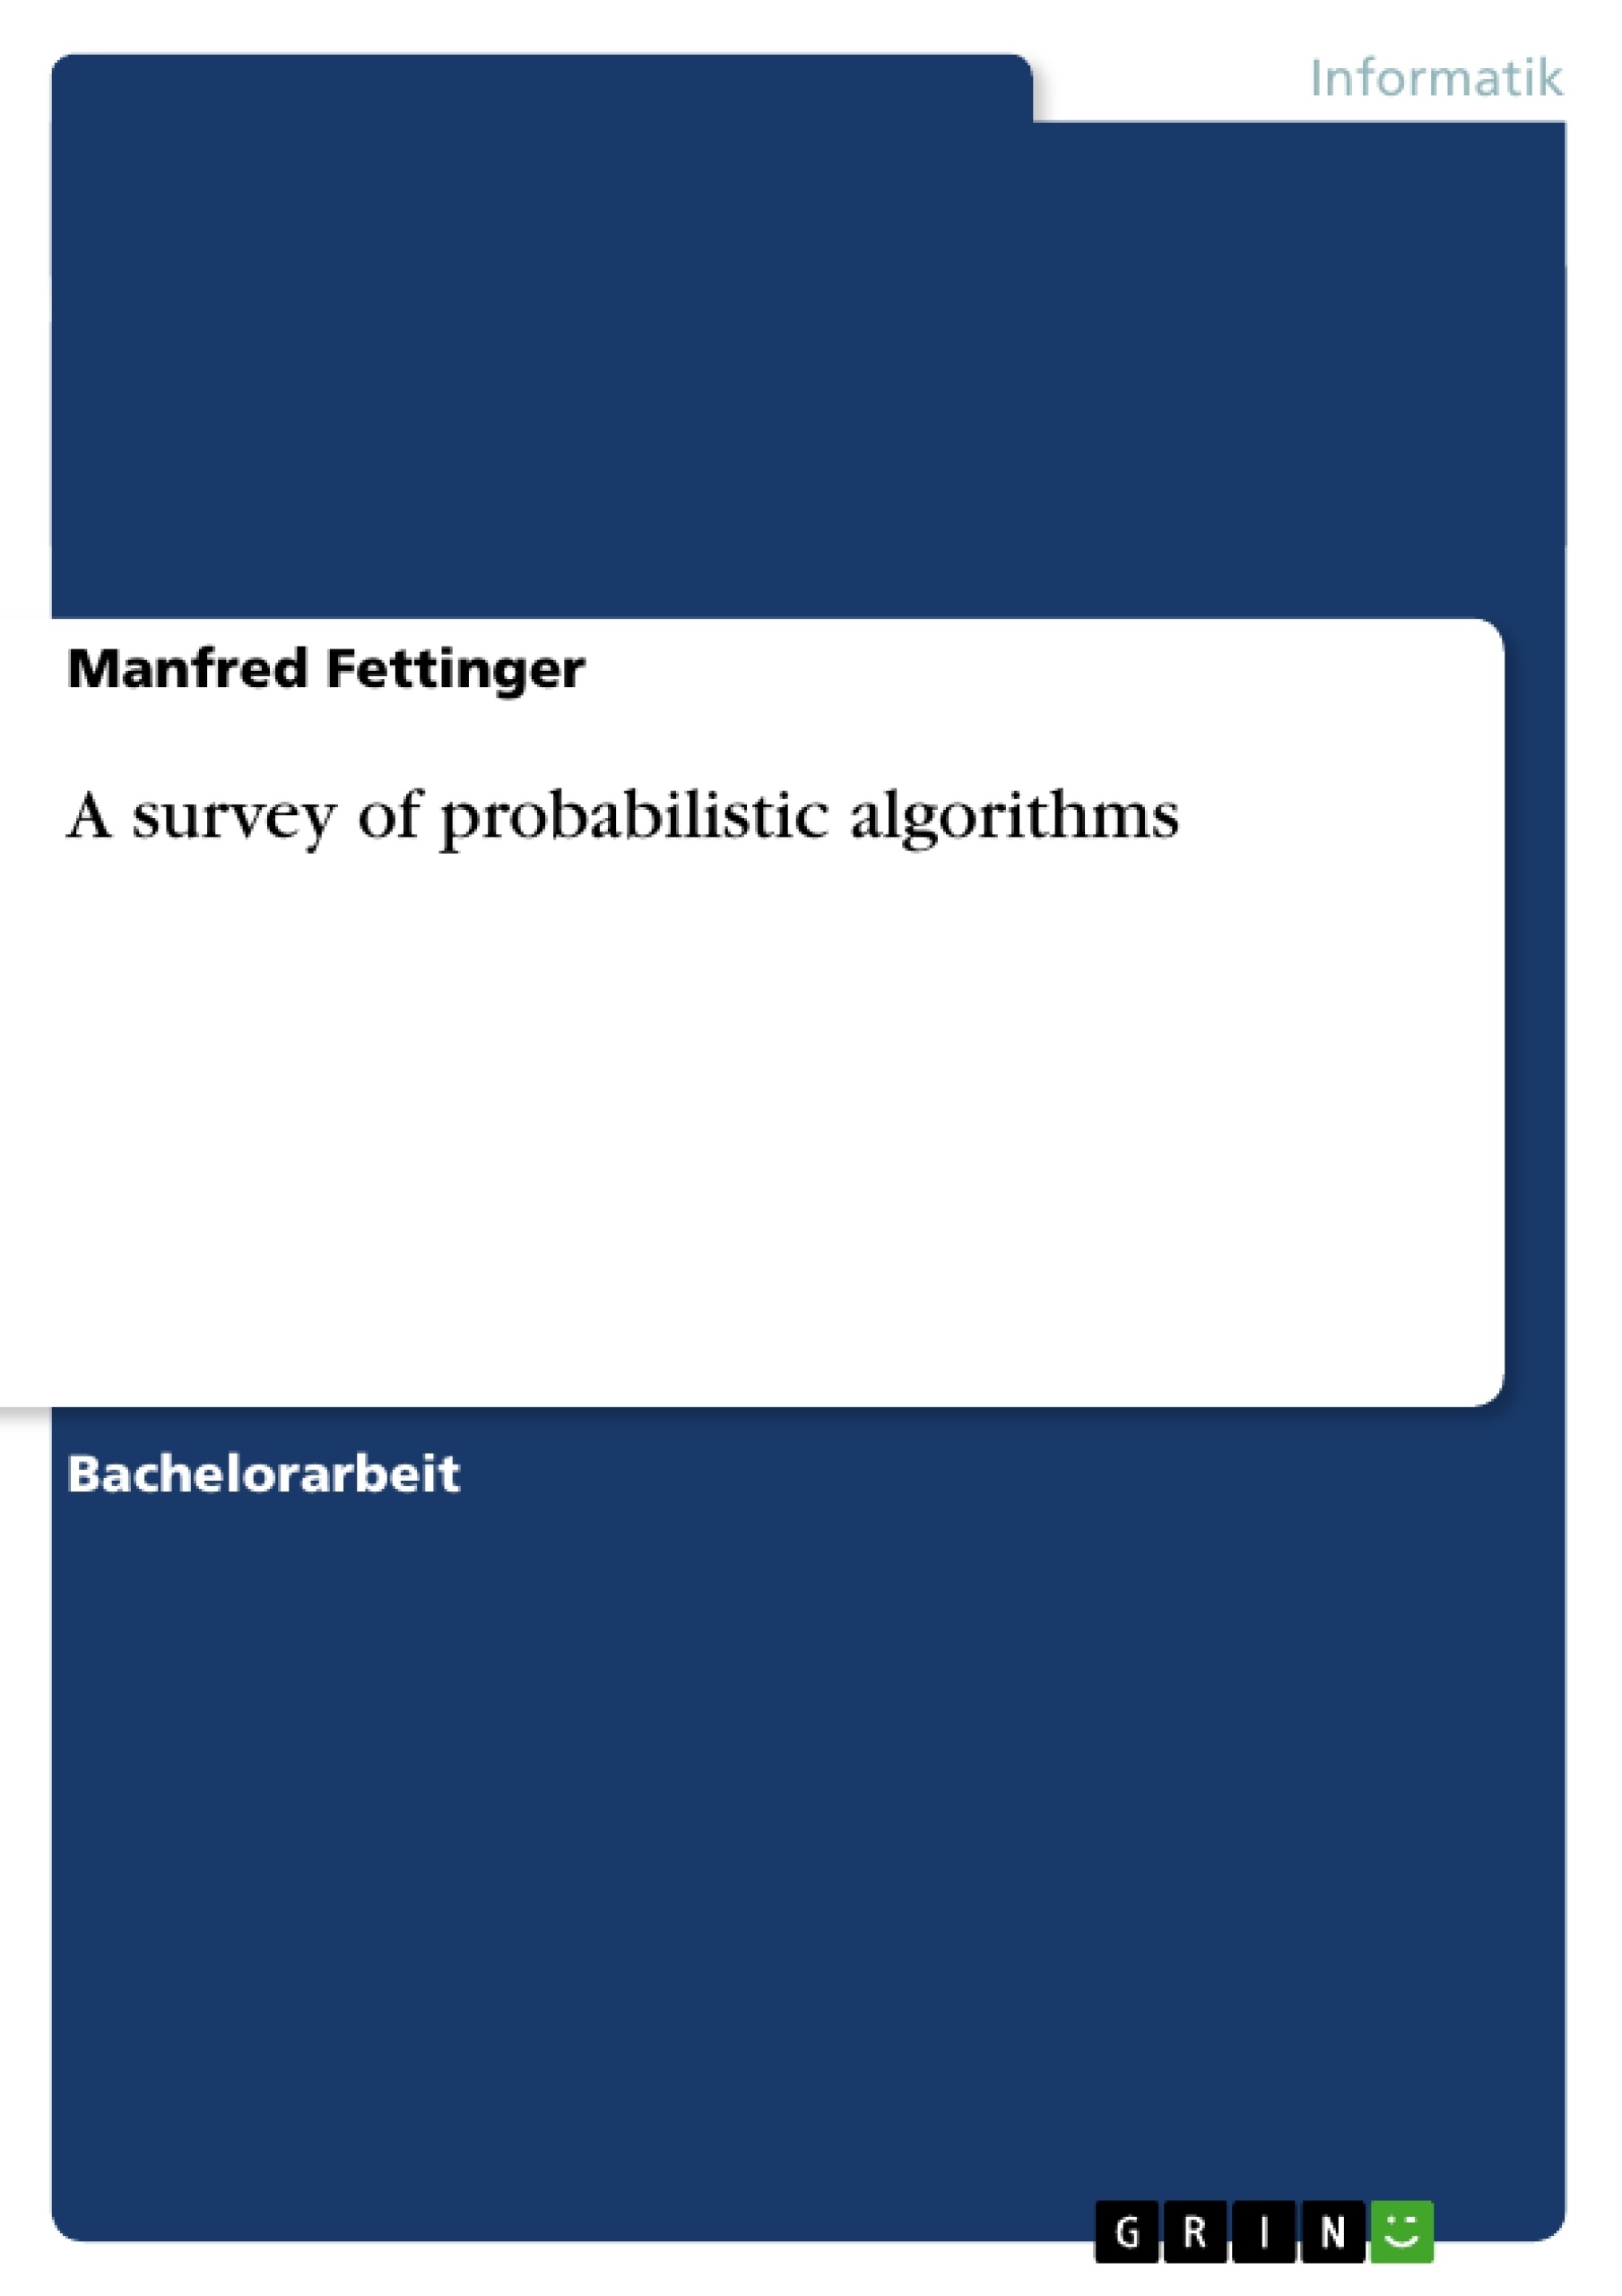 Title: A survey of probabilistic algorithms